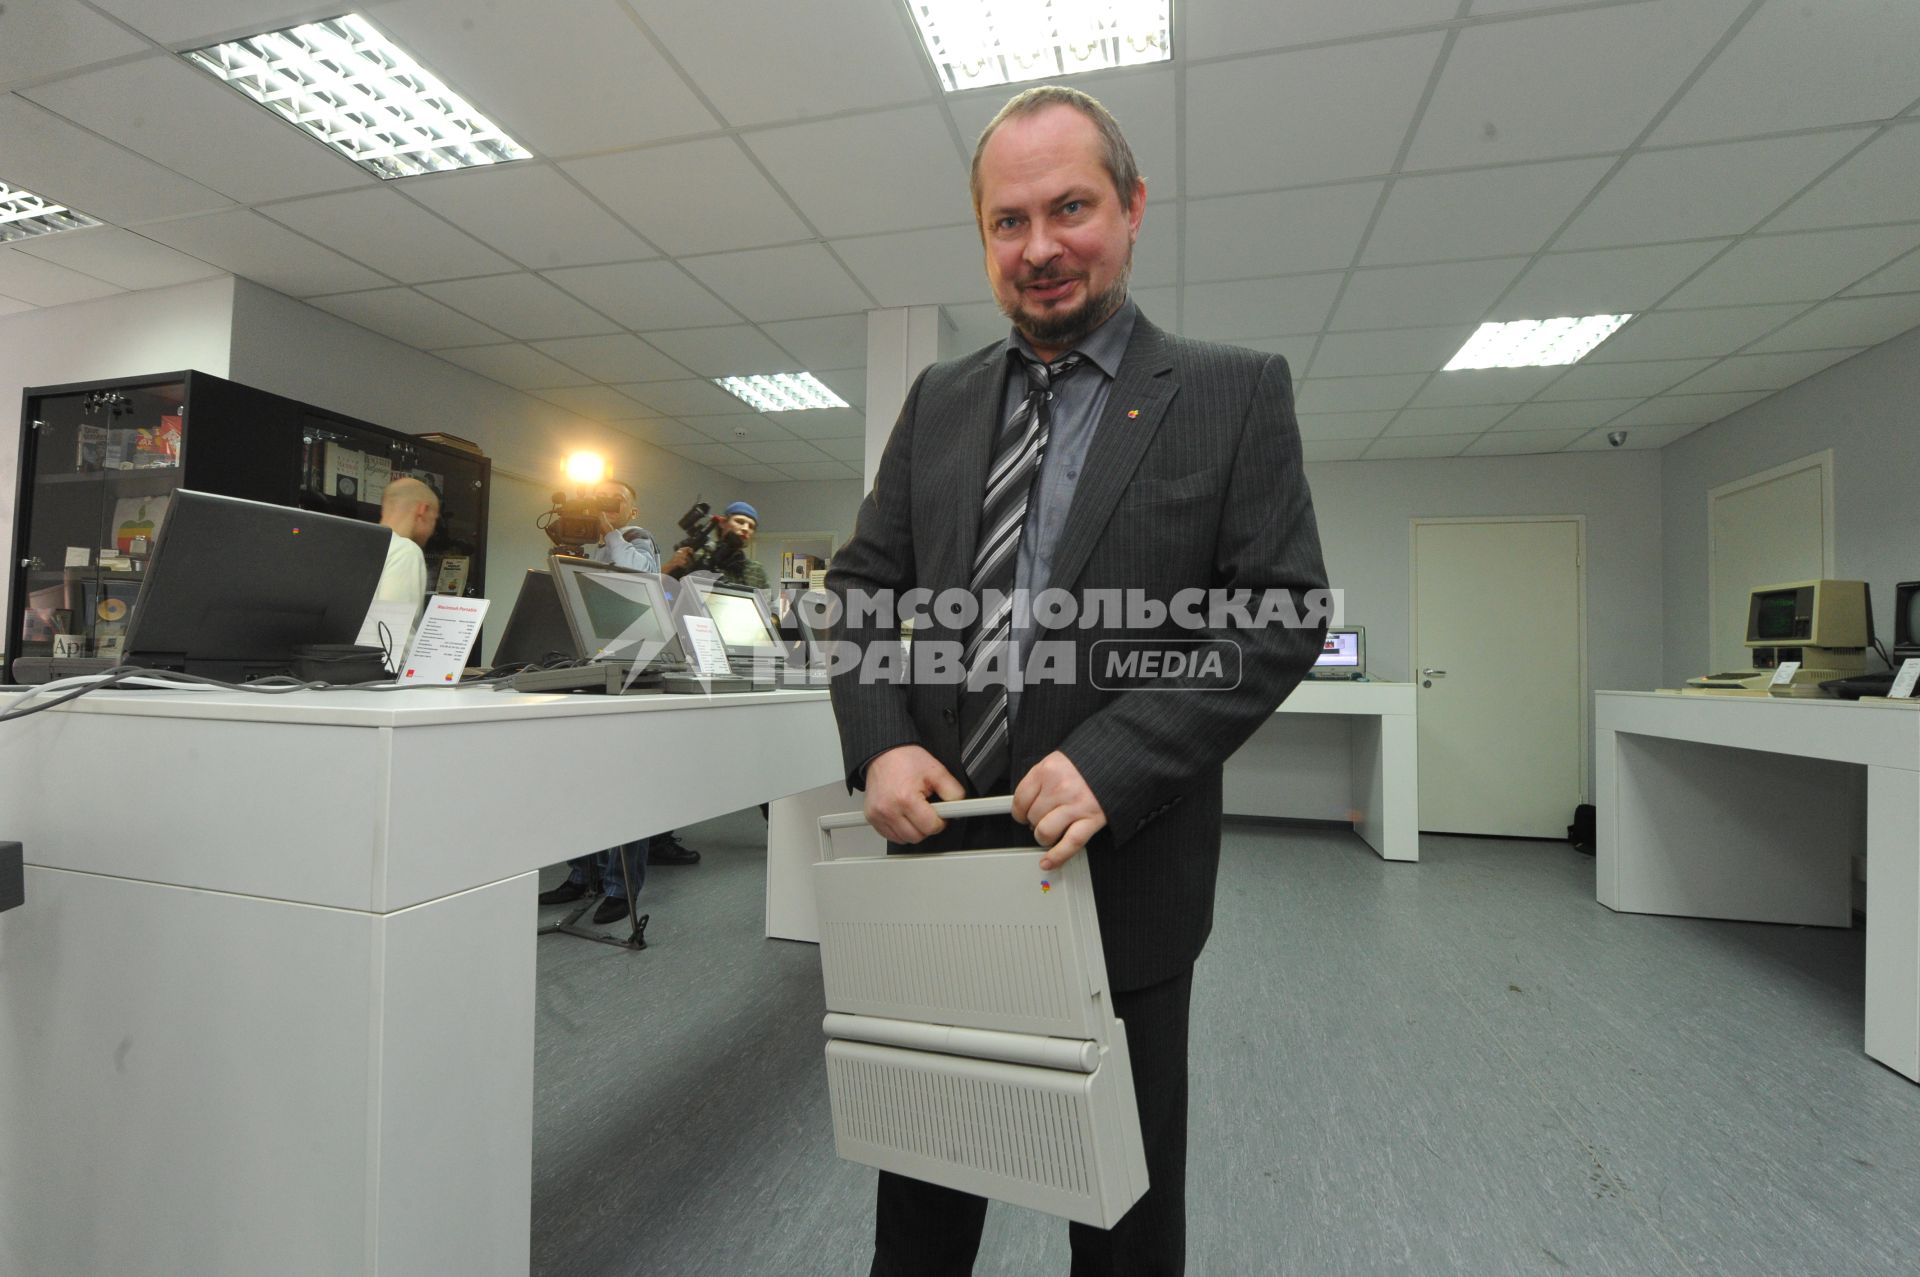 В Москве открылся музей Apple. На снимке: собиратель экспонатов музея Андрей Антонов держит в руках Mac portable.